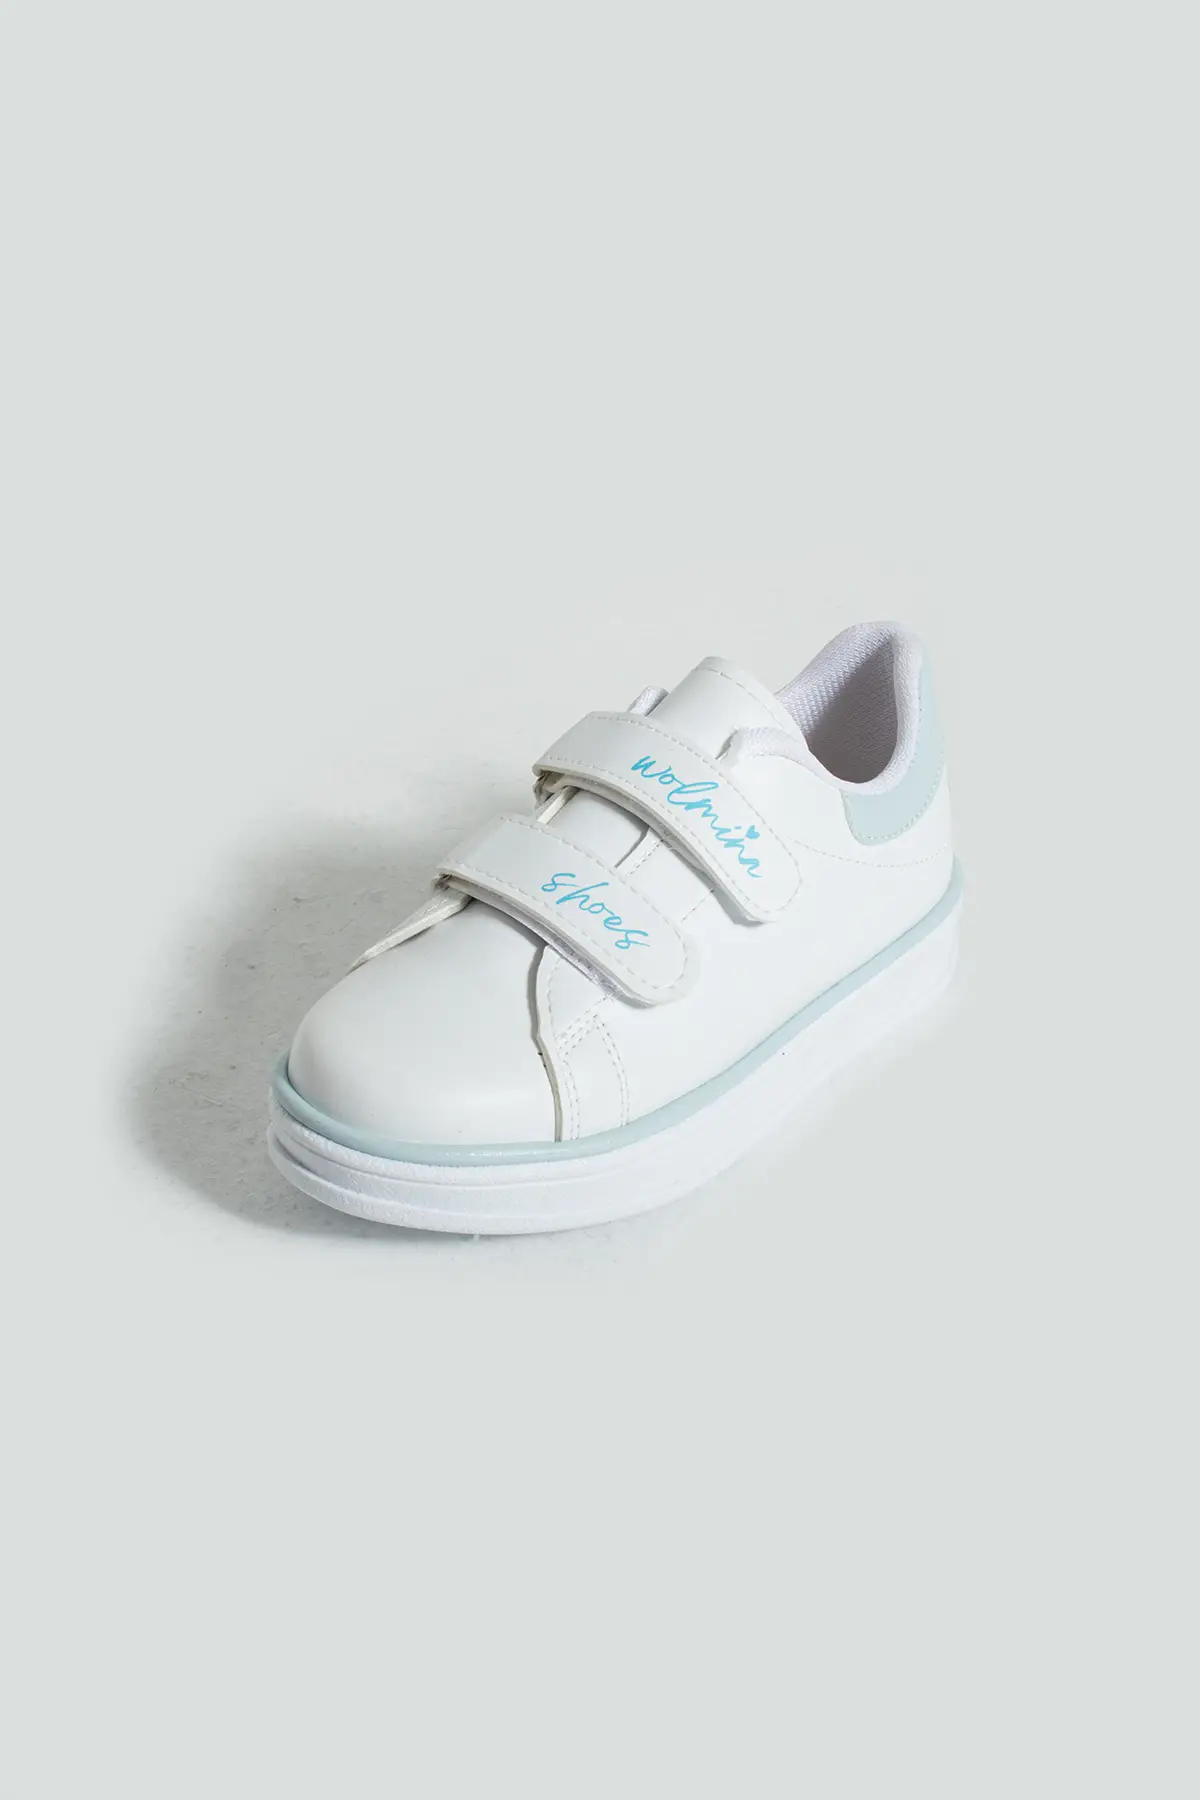 Pembe Potin Rahat Taban Cırtlı Çocuk Sneaker 001-70-24BMavi - Beyaz